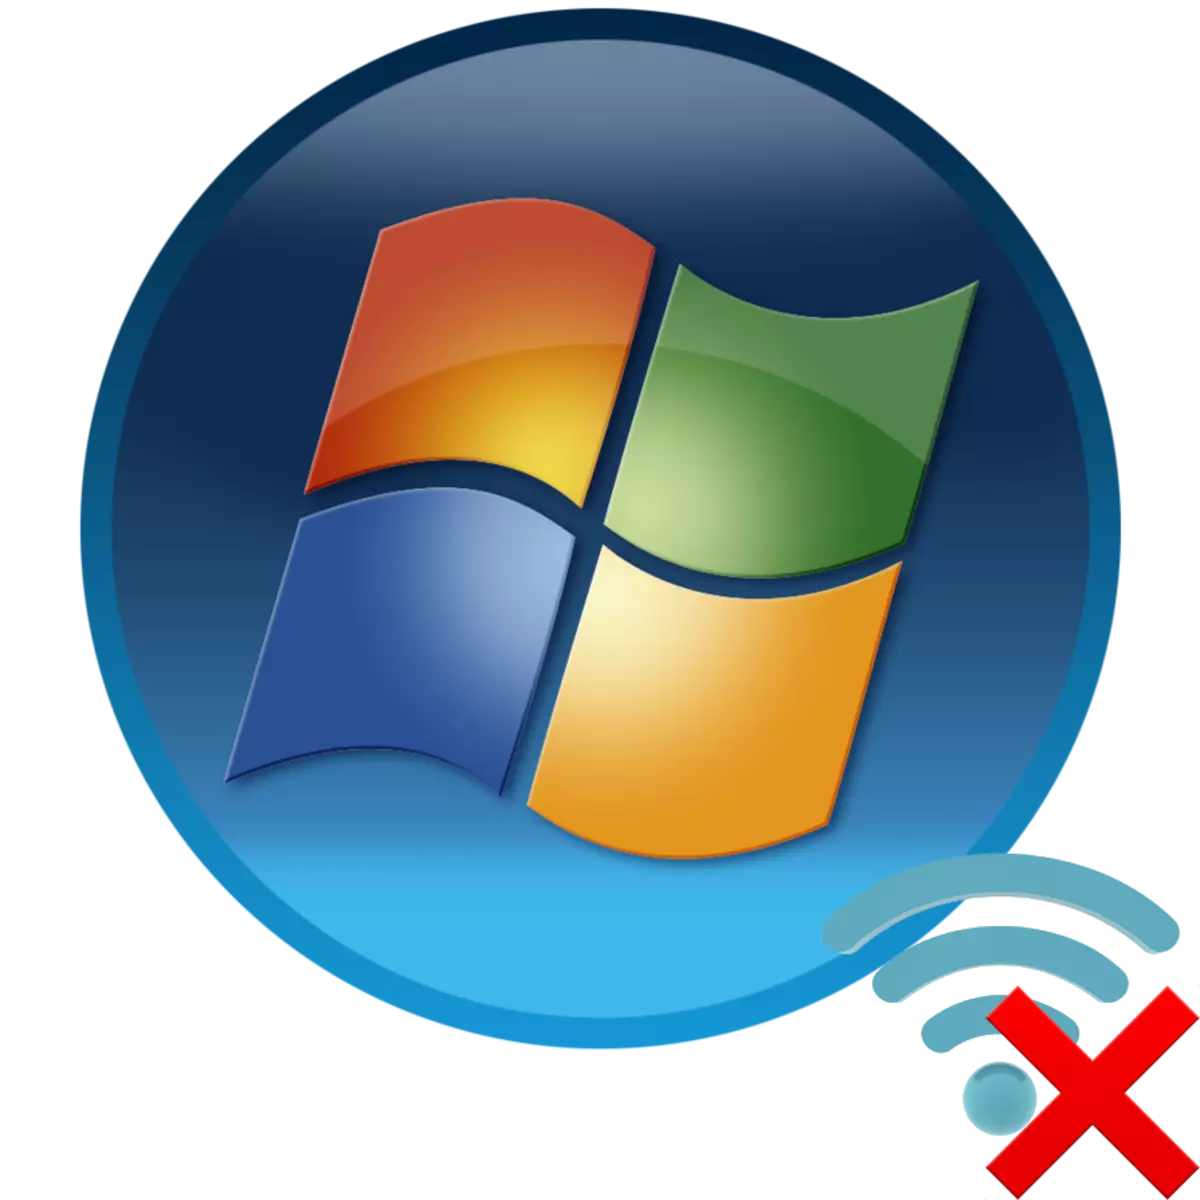 Windows 7 bilan kompyuterda mavjud bo'lmagan ulanishlar yo'q